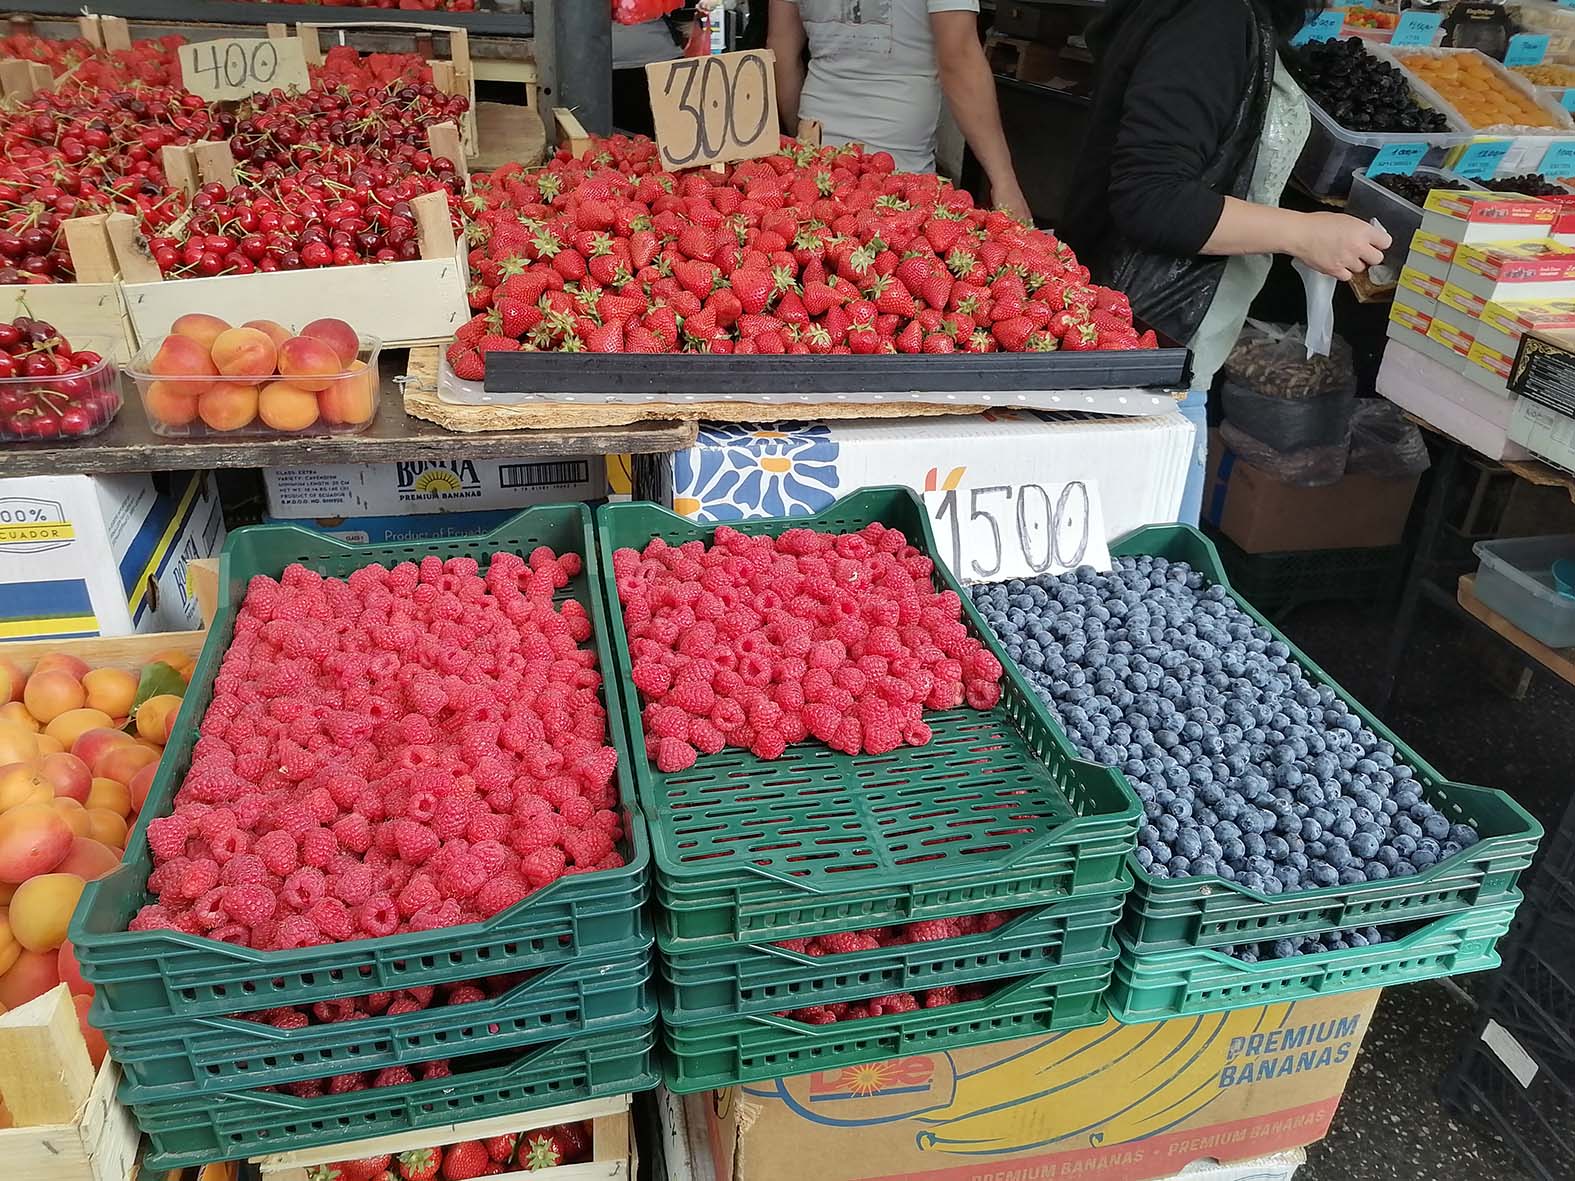 Voćari tvrde da su na granici egzistencije: Ovogodišnji rod jagode, maline i višnje slab, a otkupne cene ponovo niske 3